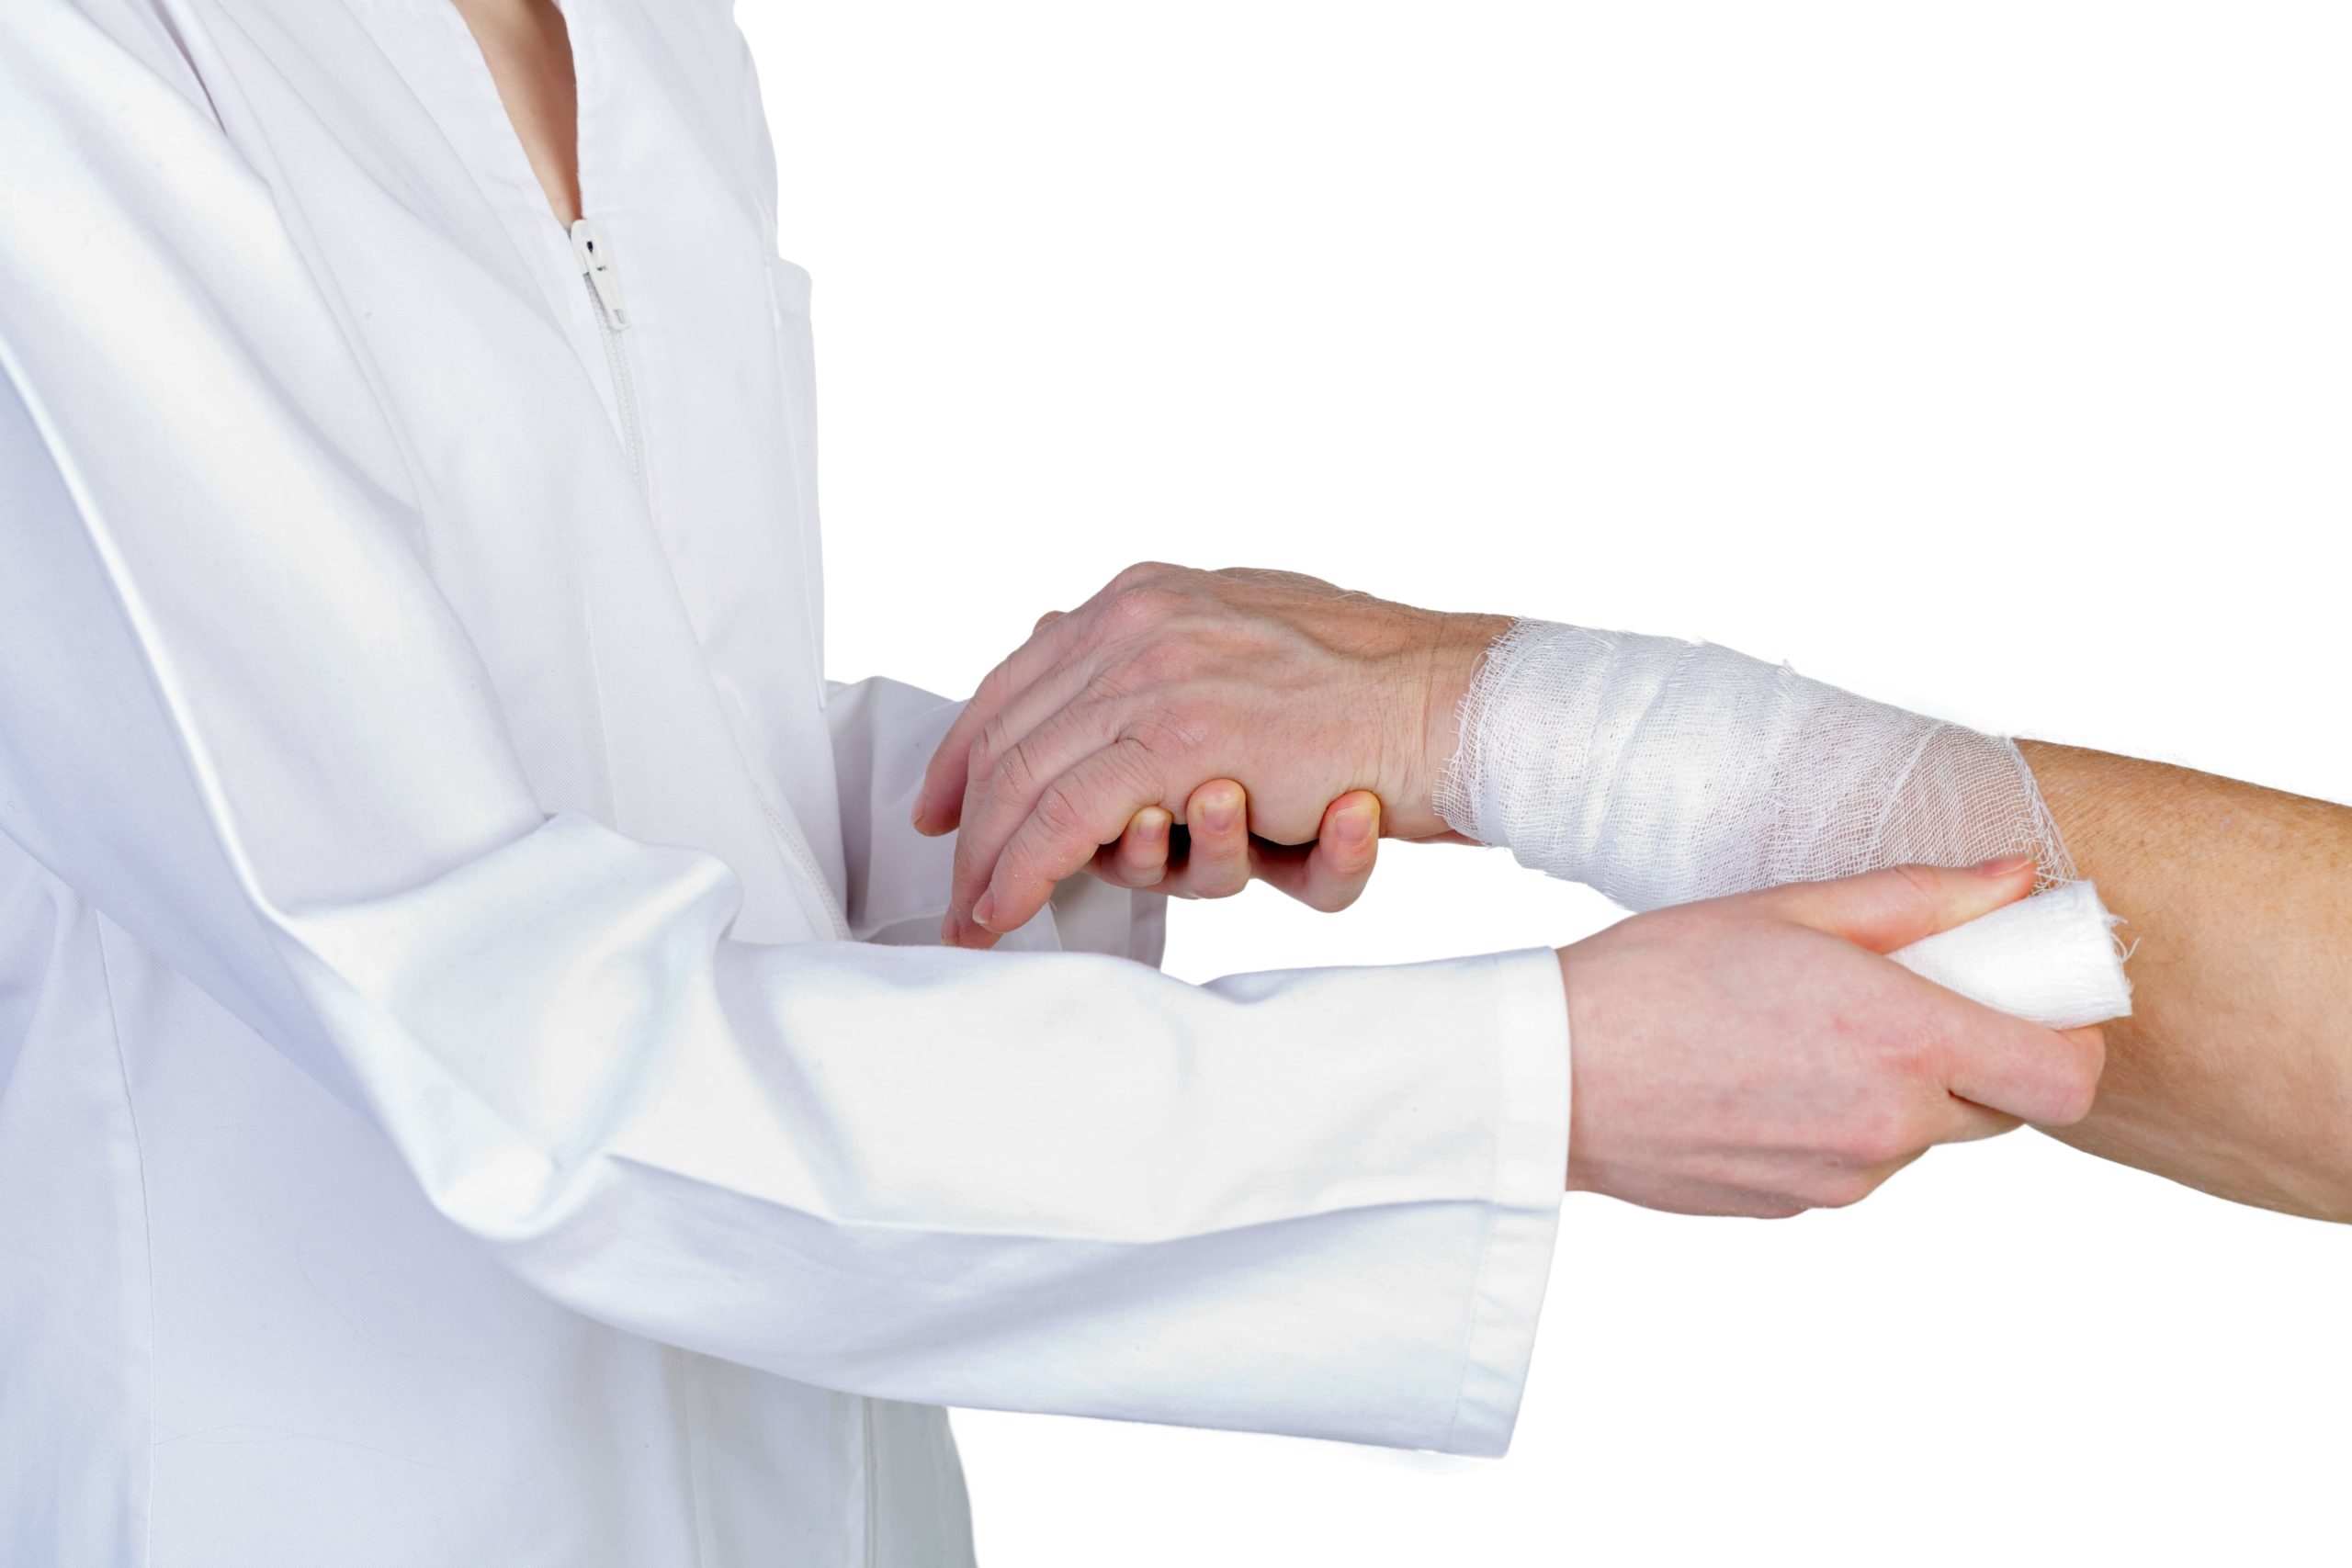 Doctor Tending to patient's injured wrist